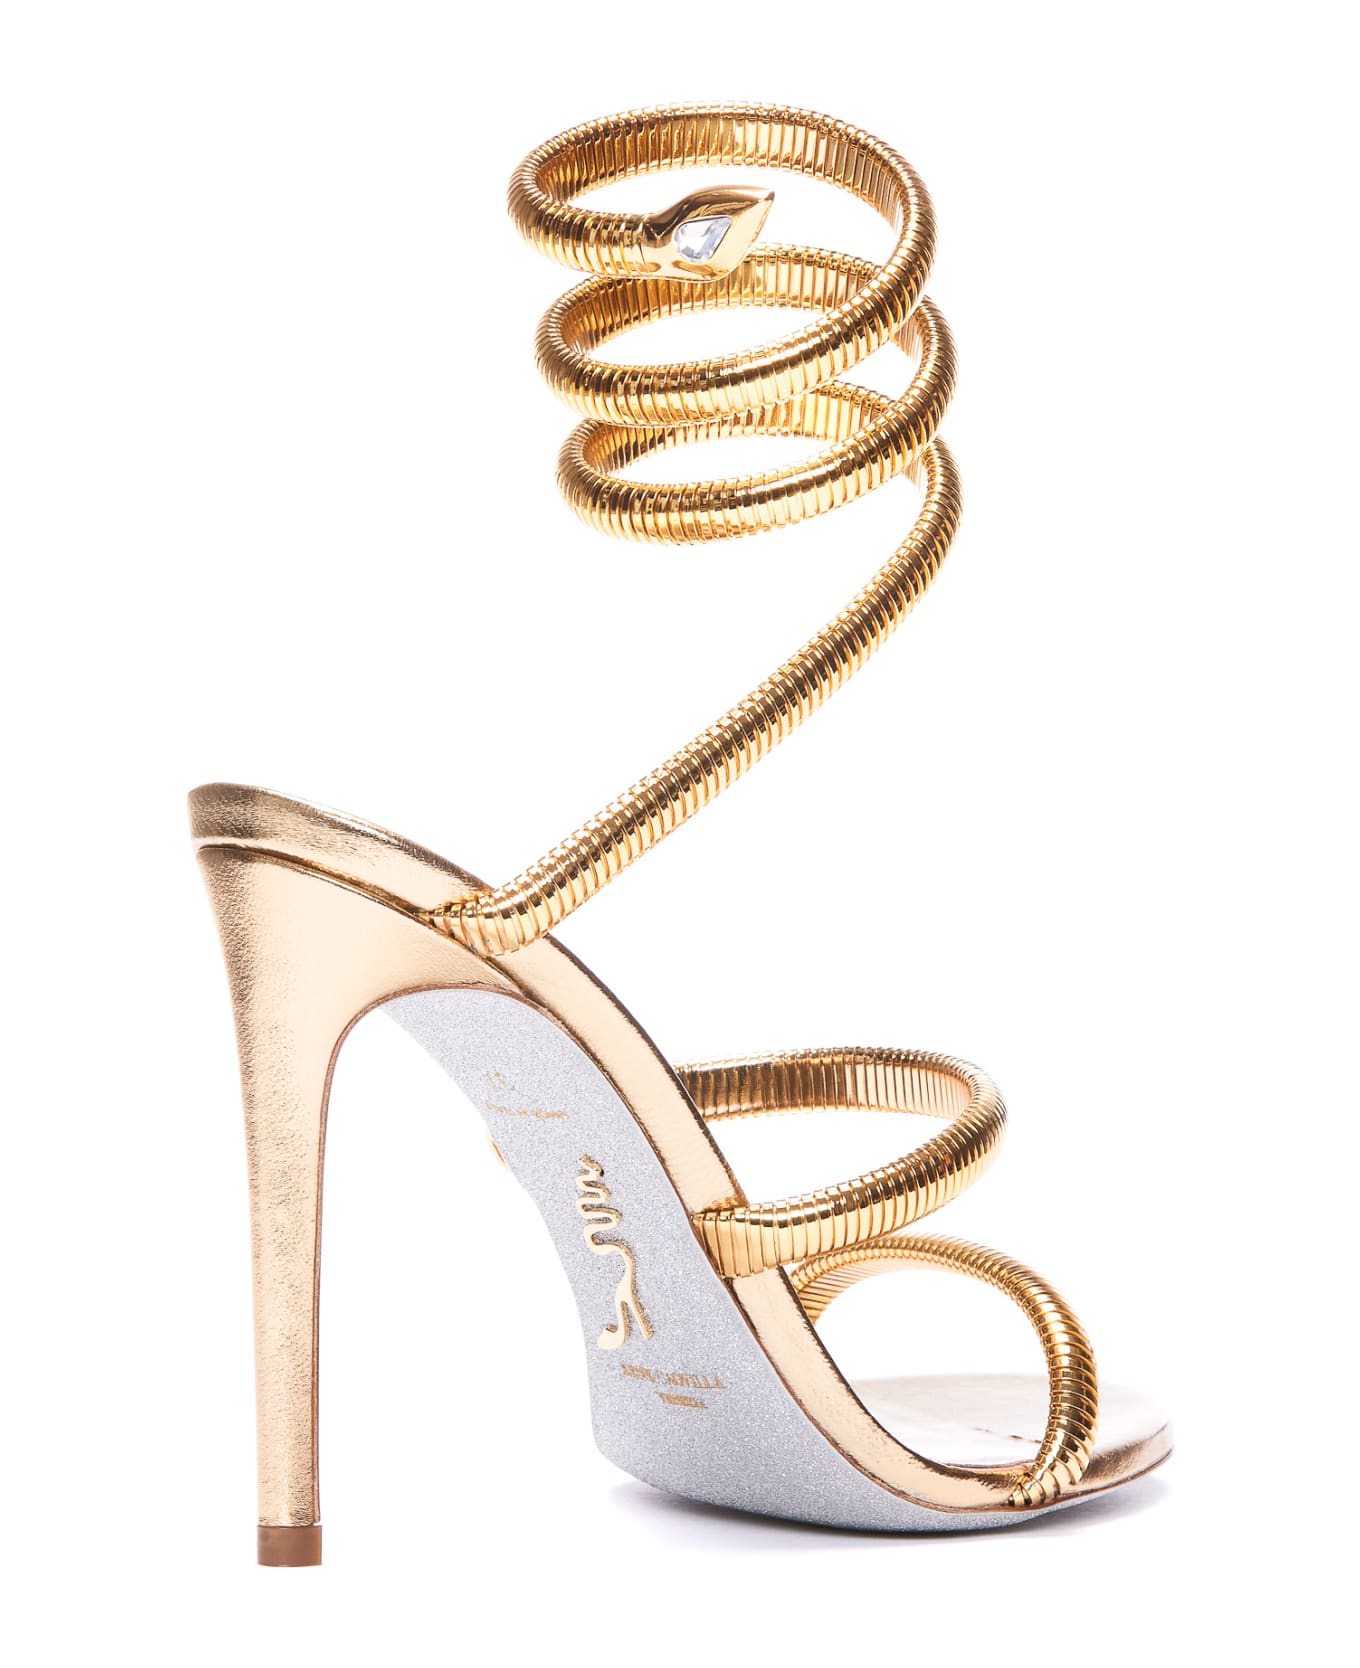 René Caovilla Juniper Pump Sandals - Gold